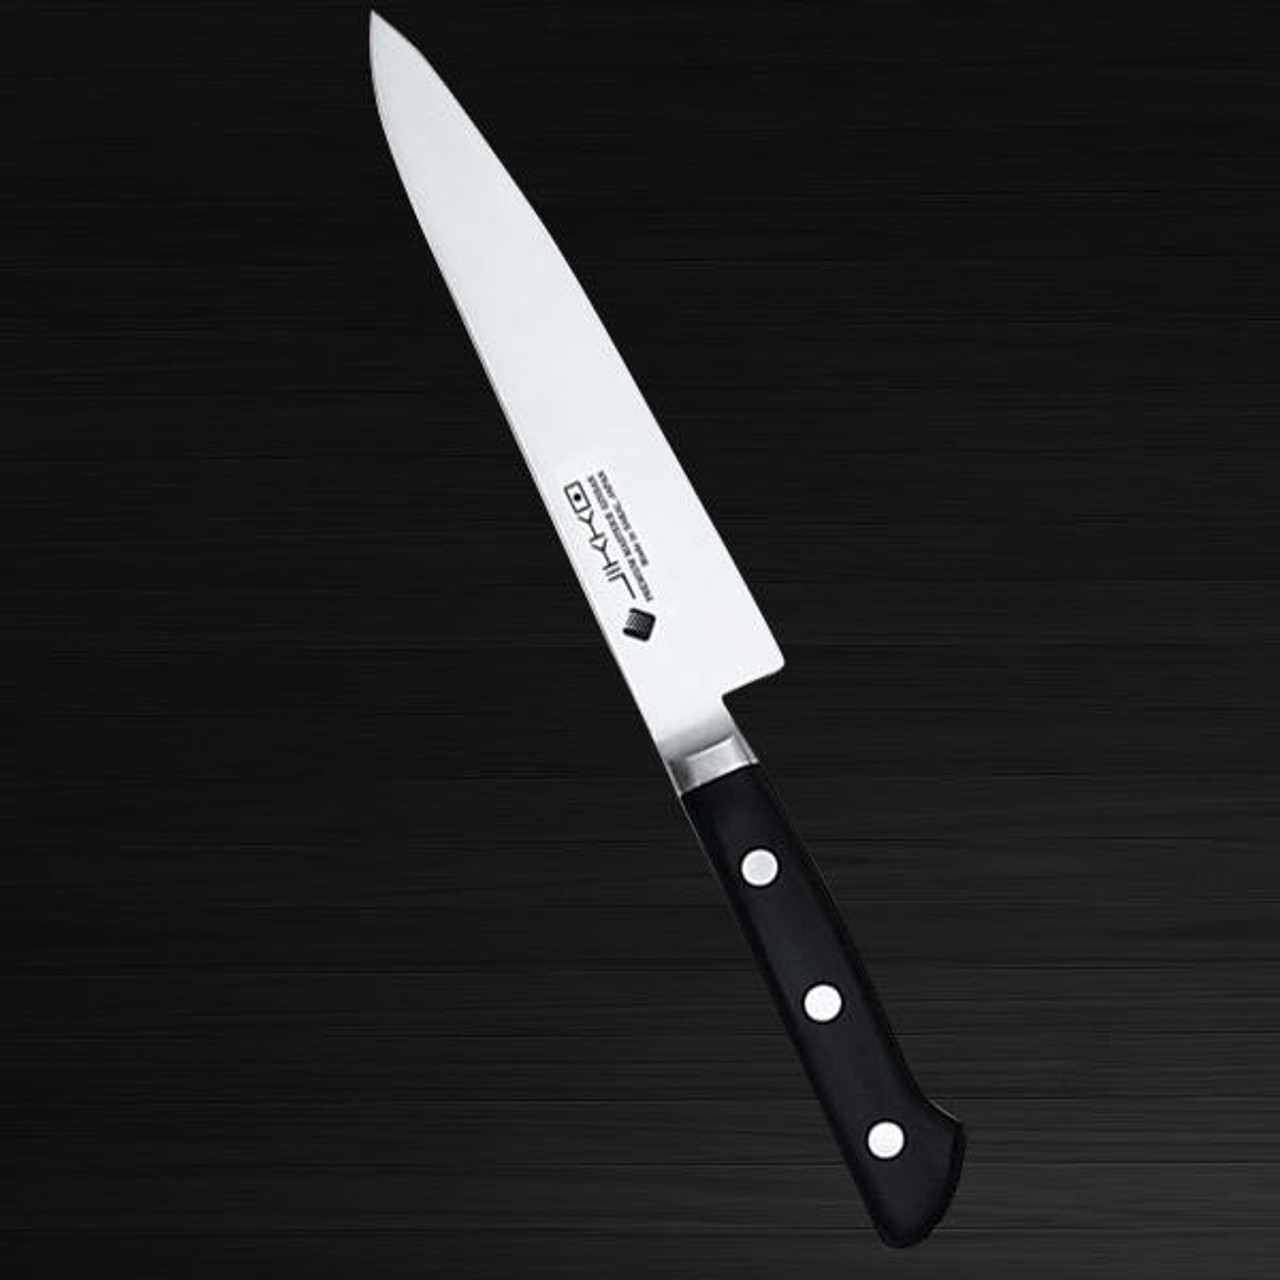 Japanese Master Chef Knife